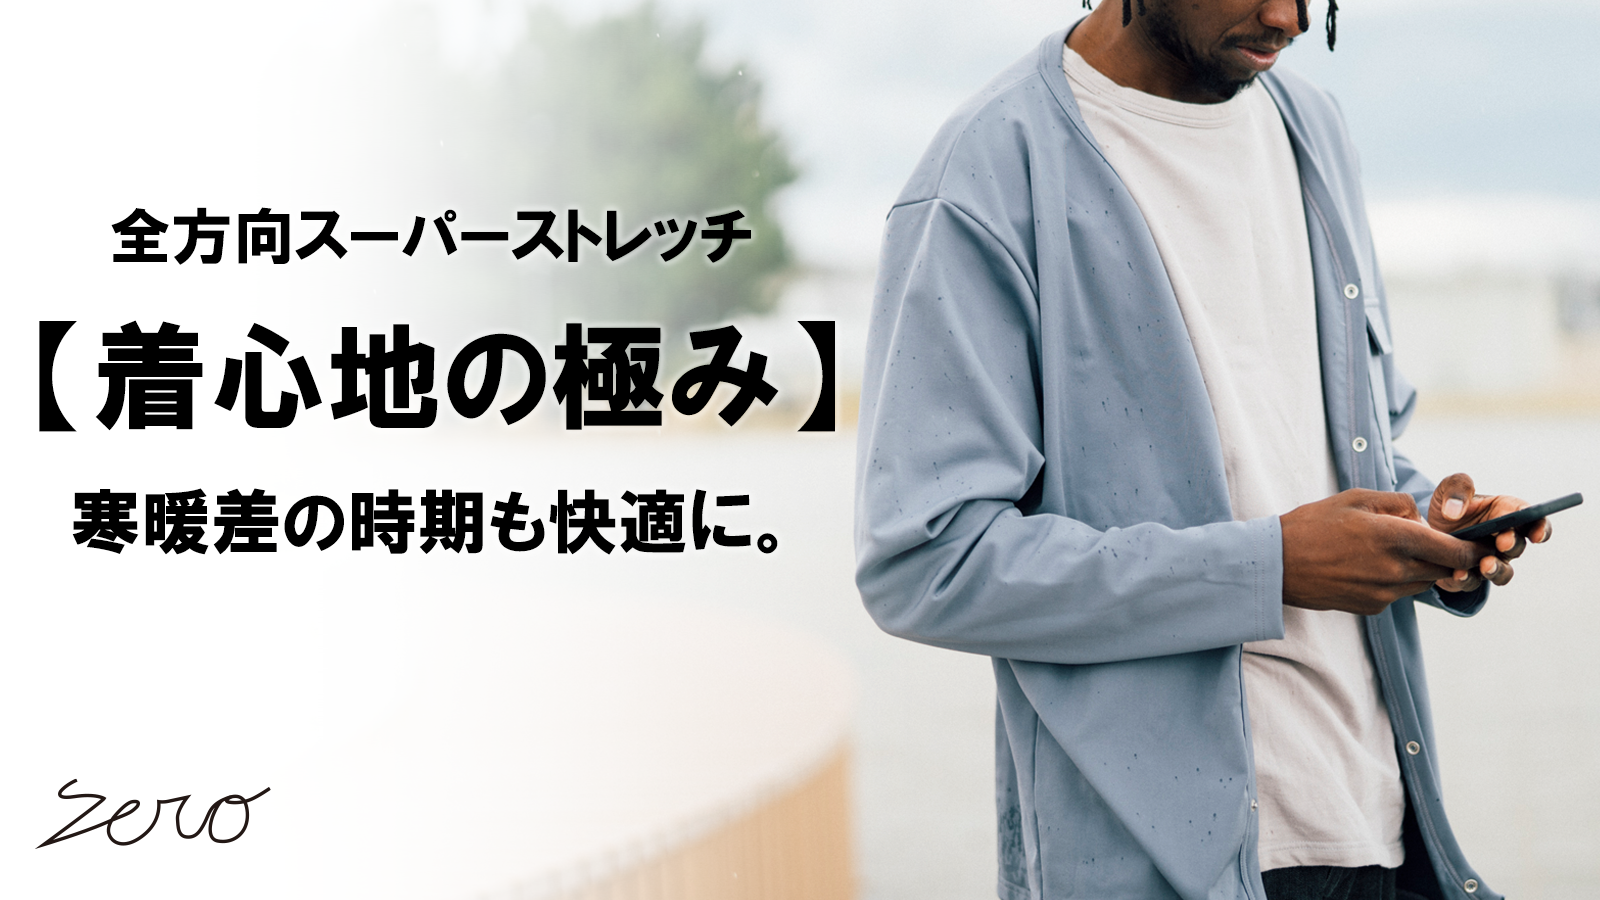 New Makuake Project【温度調節素材を使用し、衣服内の温度を快適に保つ。スーパーストレッチカーディガン】